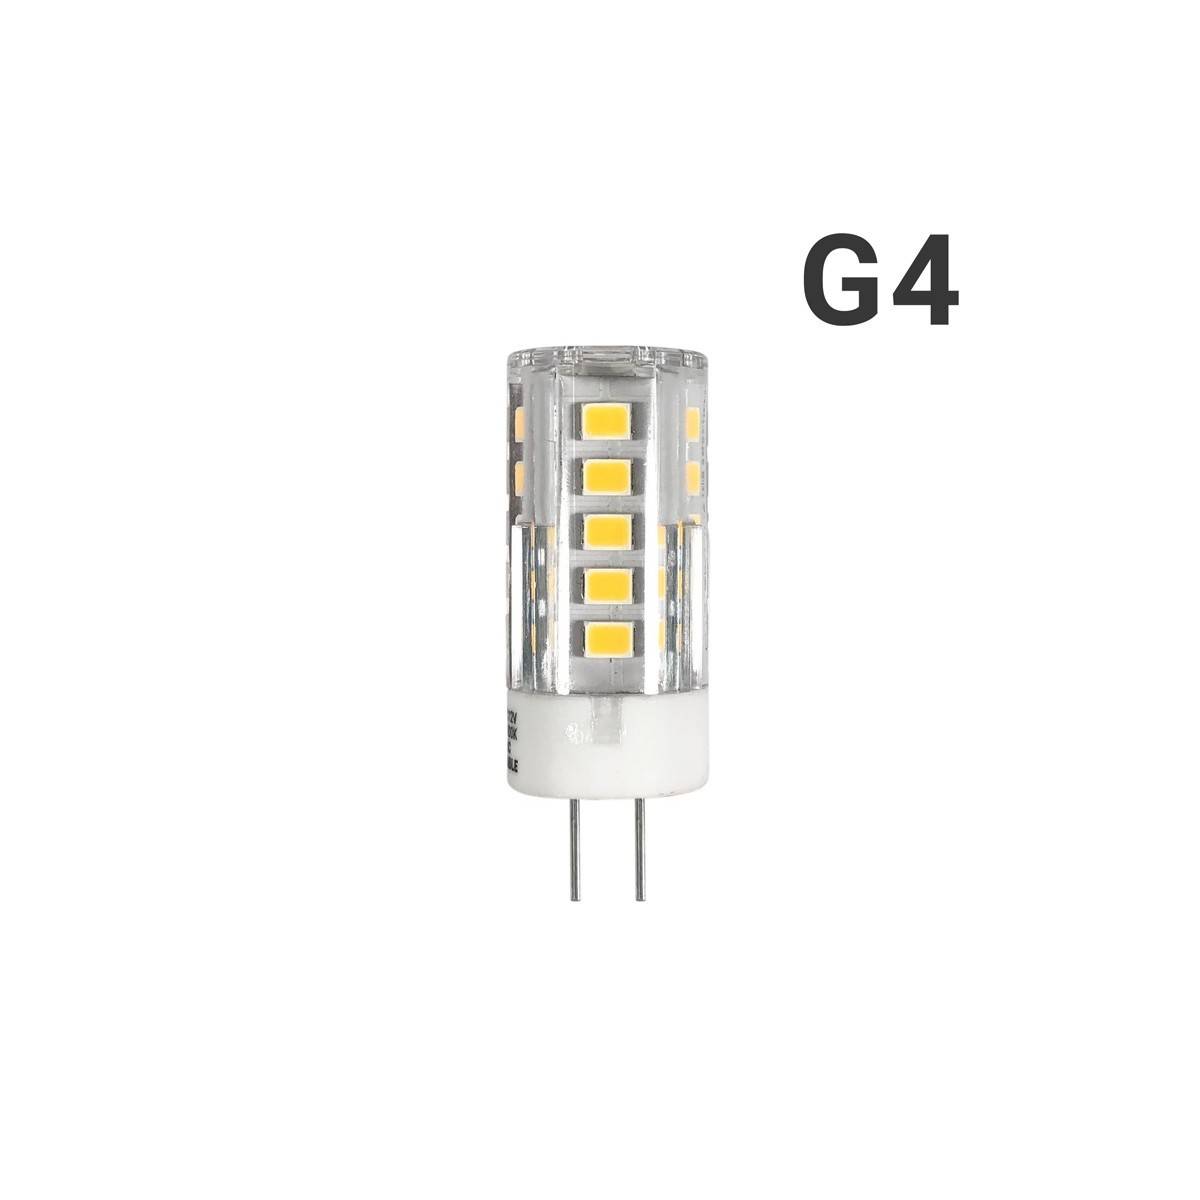 G4 Bi-Pin 2.5W 12V-DC/AC 270lm LED-Glühbirne G4 Bi-Pin 2.5W 12V-DC/AC 270lm